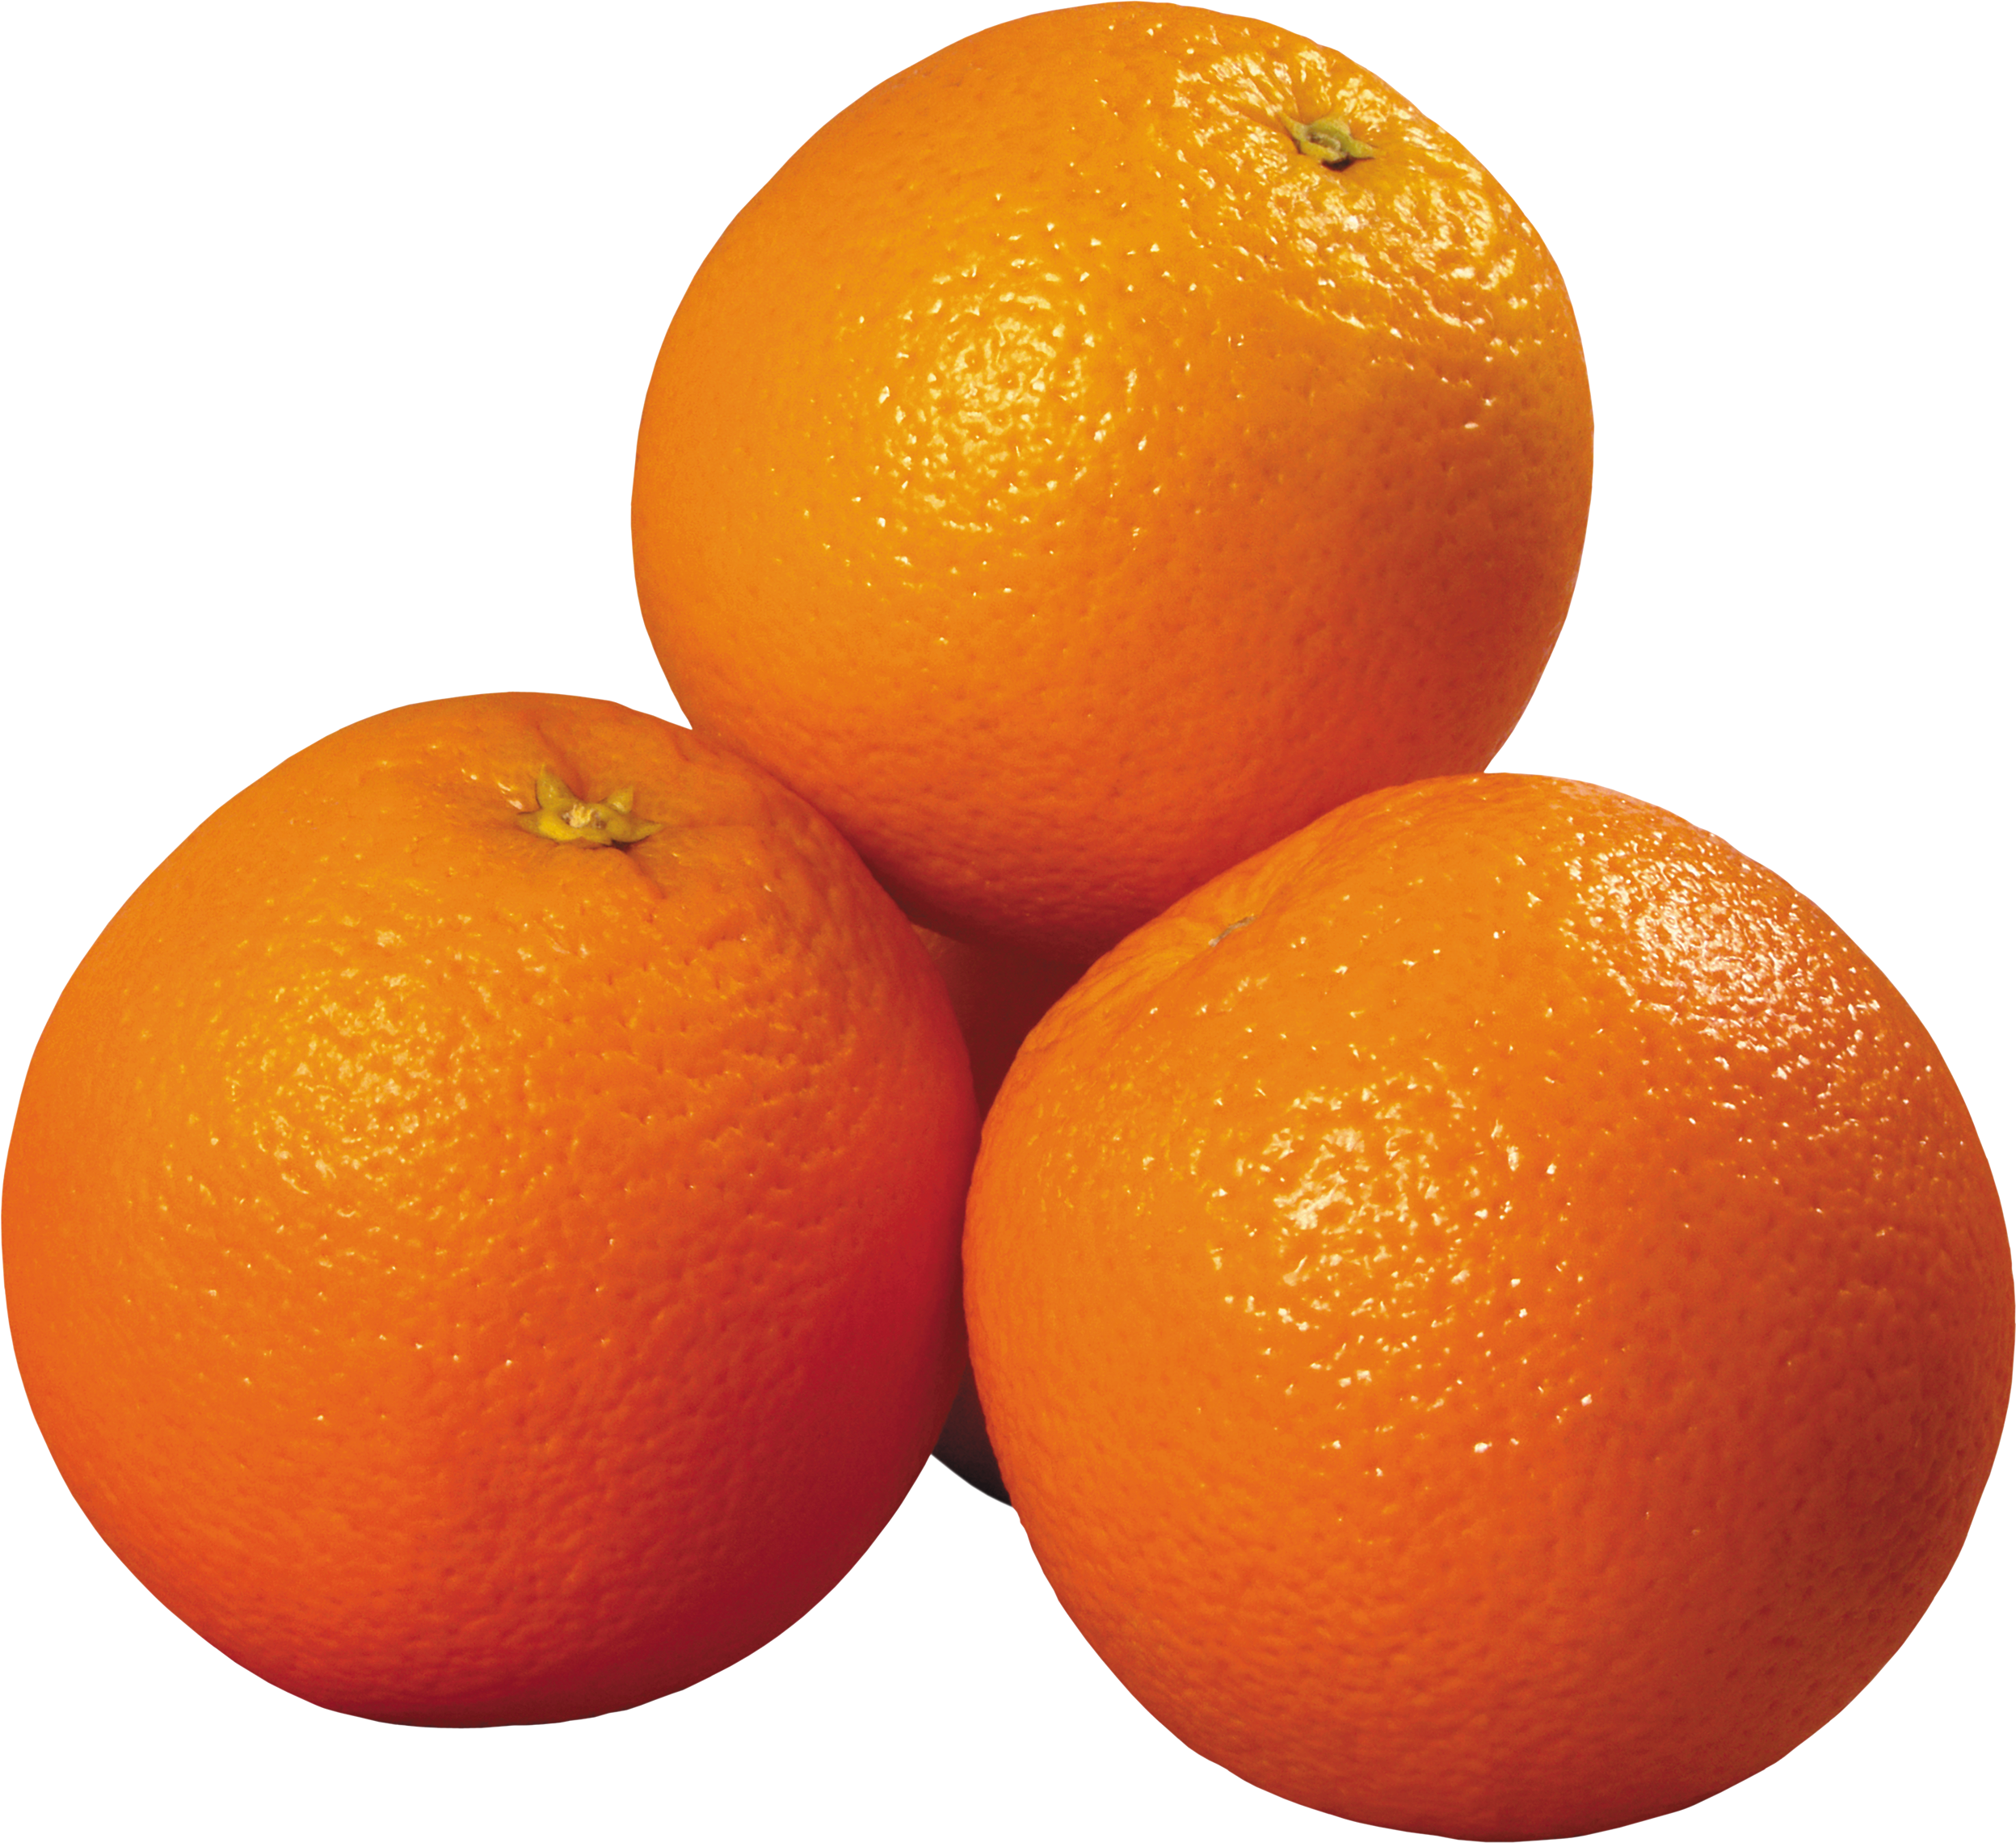 Оранжевый мандарин. Apelsin 1:1. Апельсин на белом фоне. Апельсинтна белом фоне.